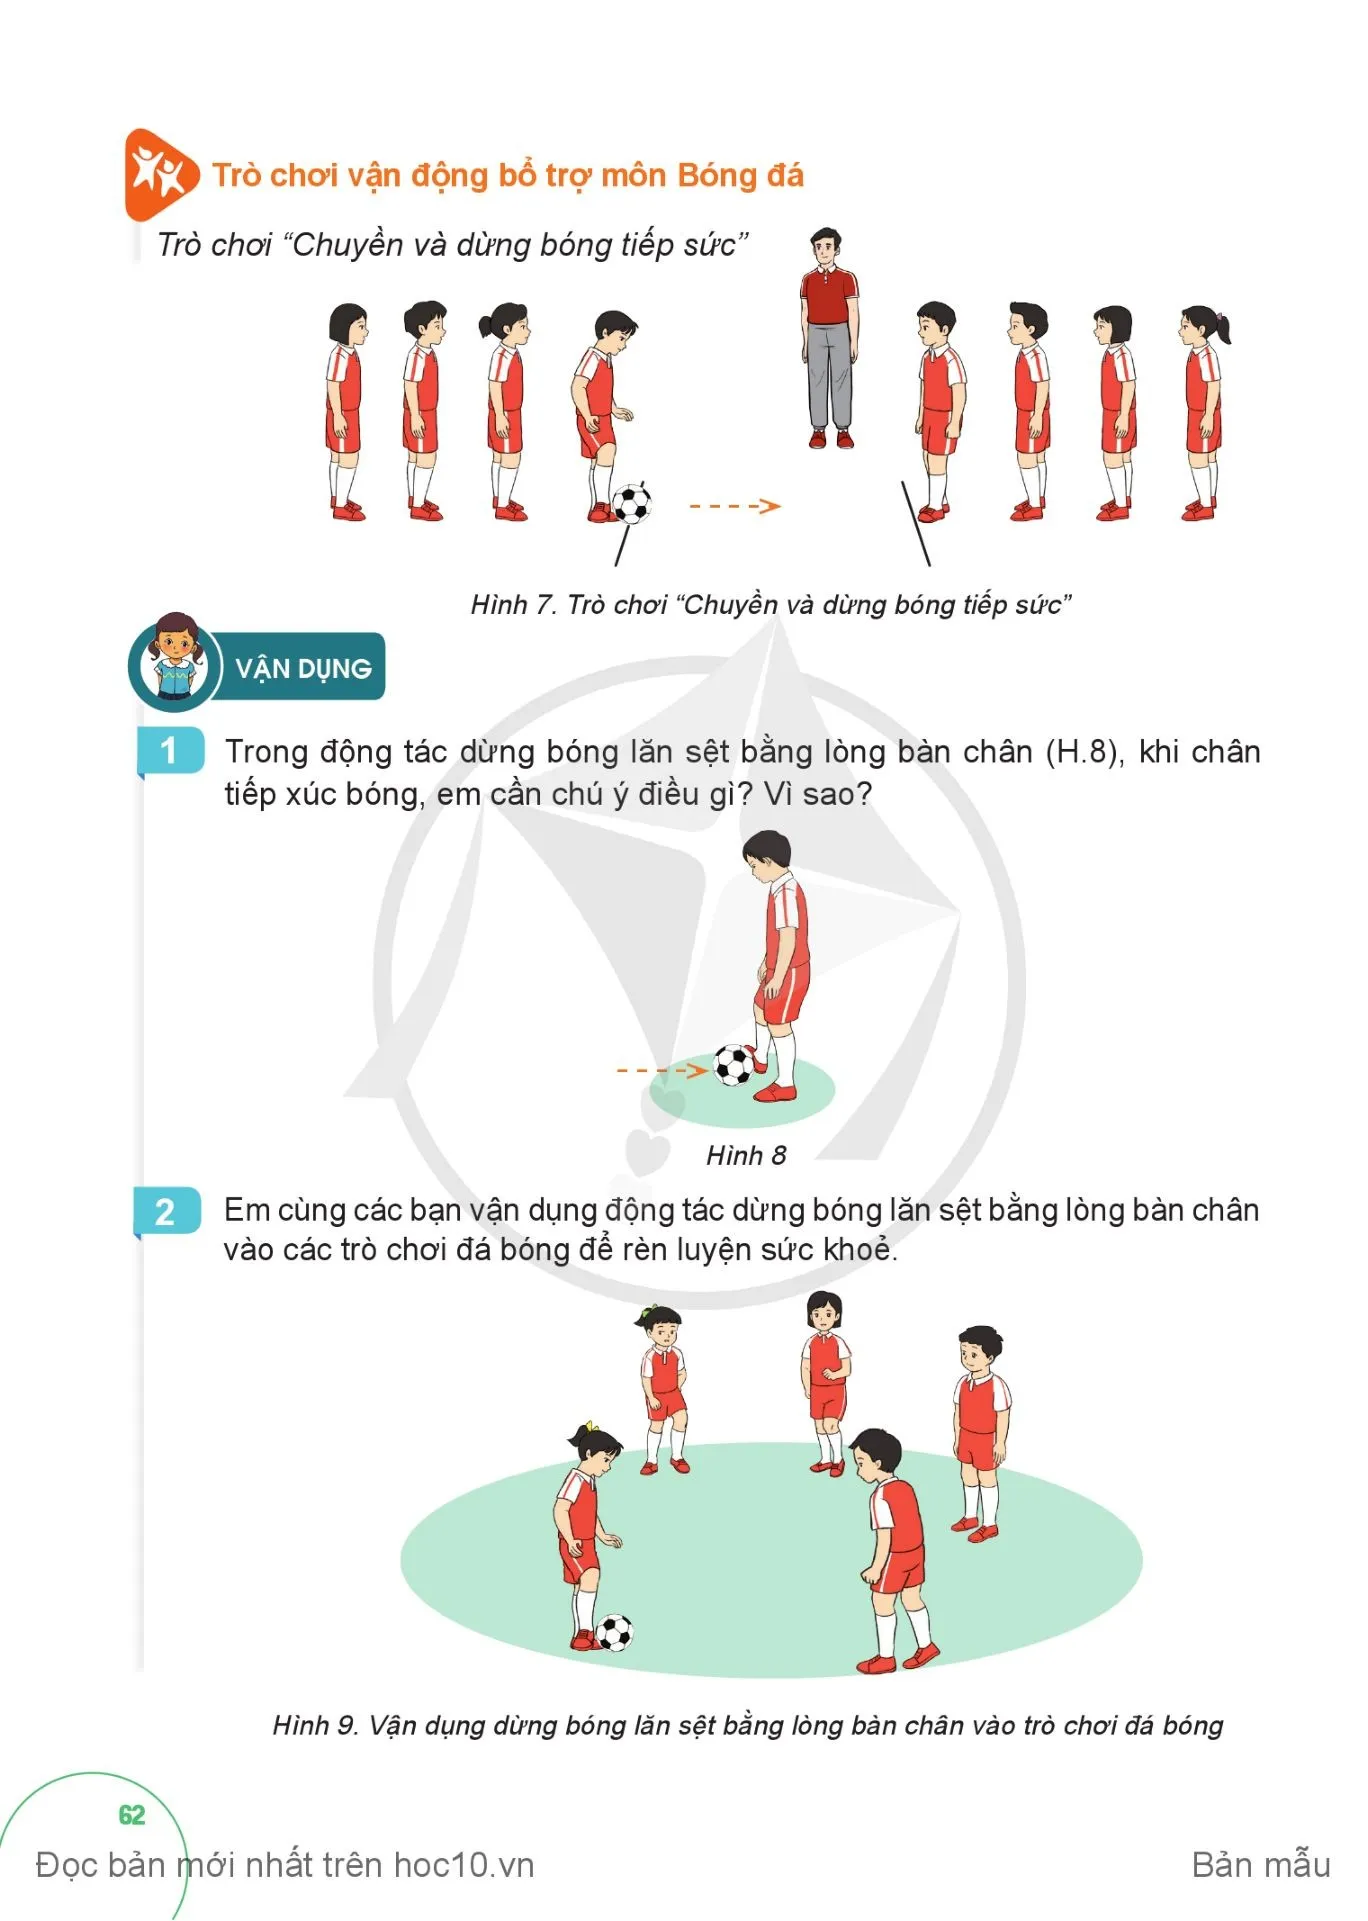 Bài 2. Động tác dừng bóng lăn sệt bằng lòng bàn chân